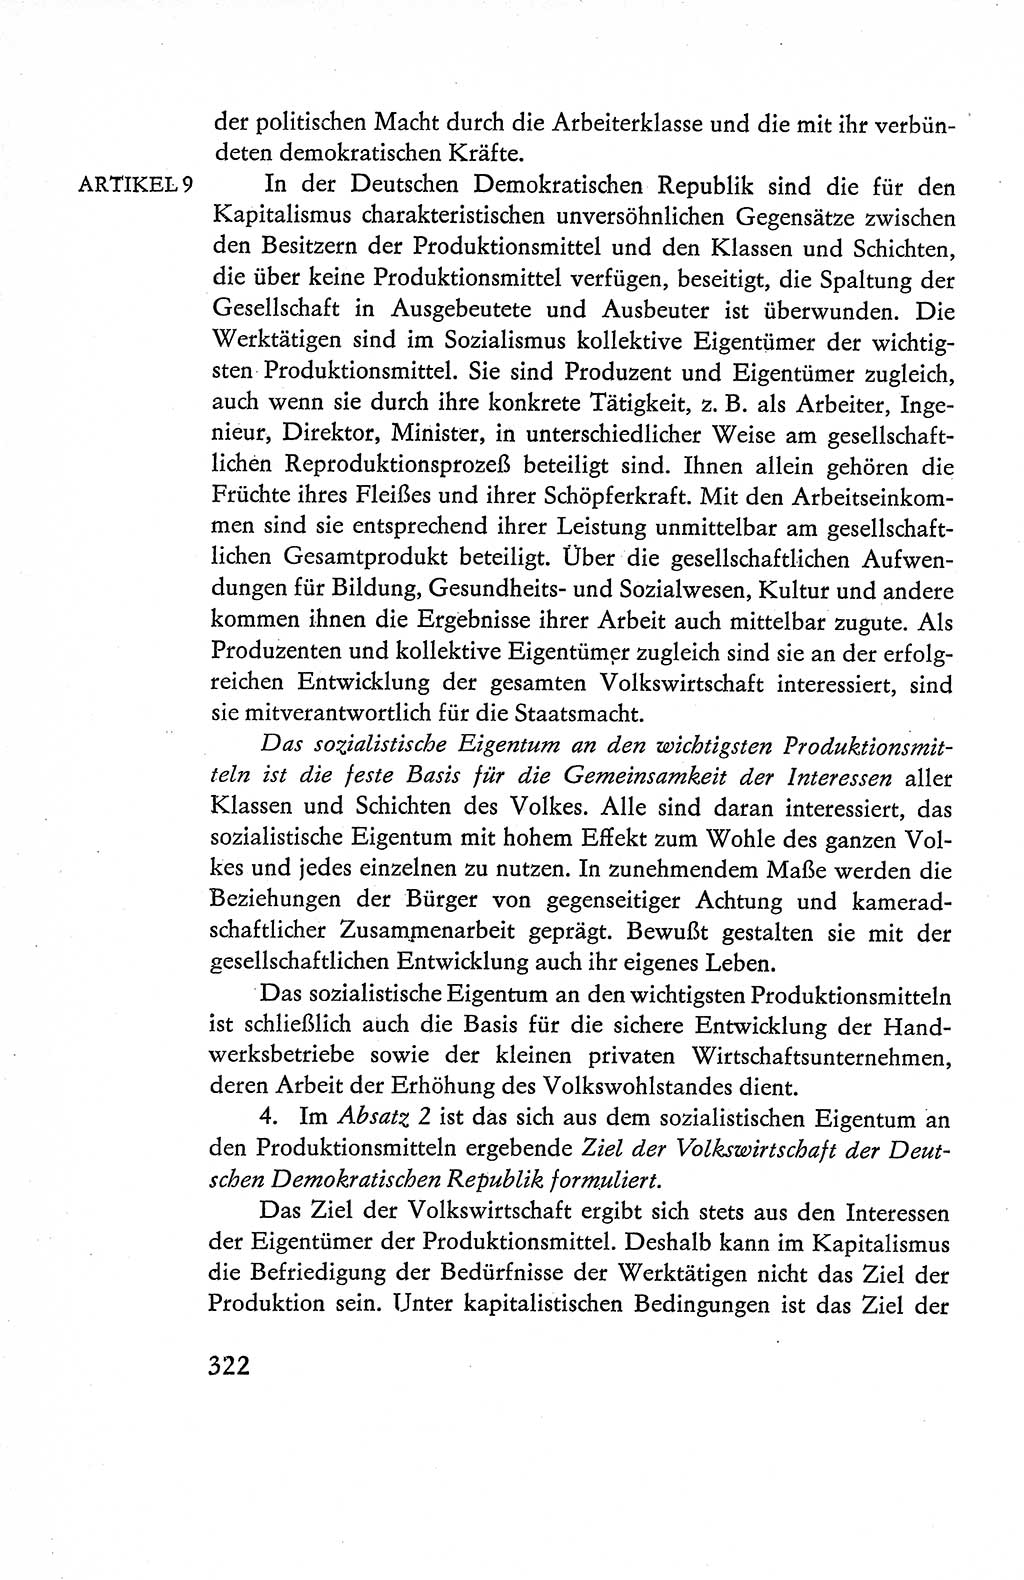 Verfassung der Deutschen Demokratischen Republik (DDR), Dokumente, Kommentar 1969, Band 1, Seite 322 (Verf. DDR Dok. Komm. 1969, Bd. 1, S. 322)